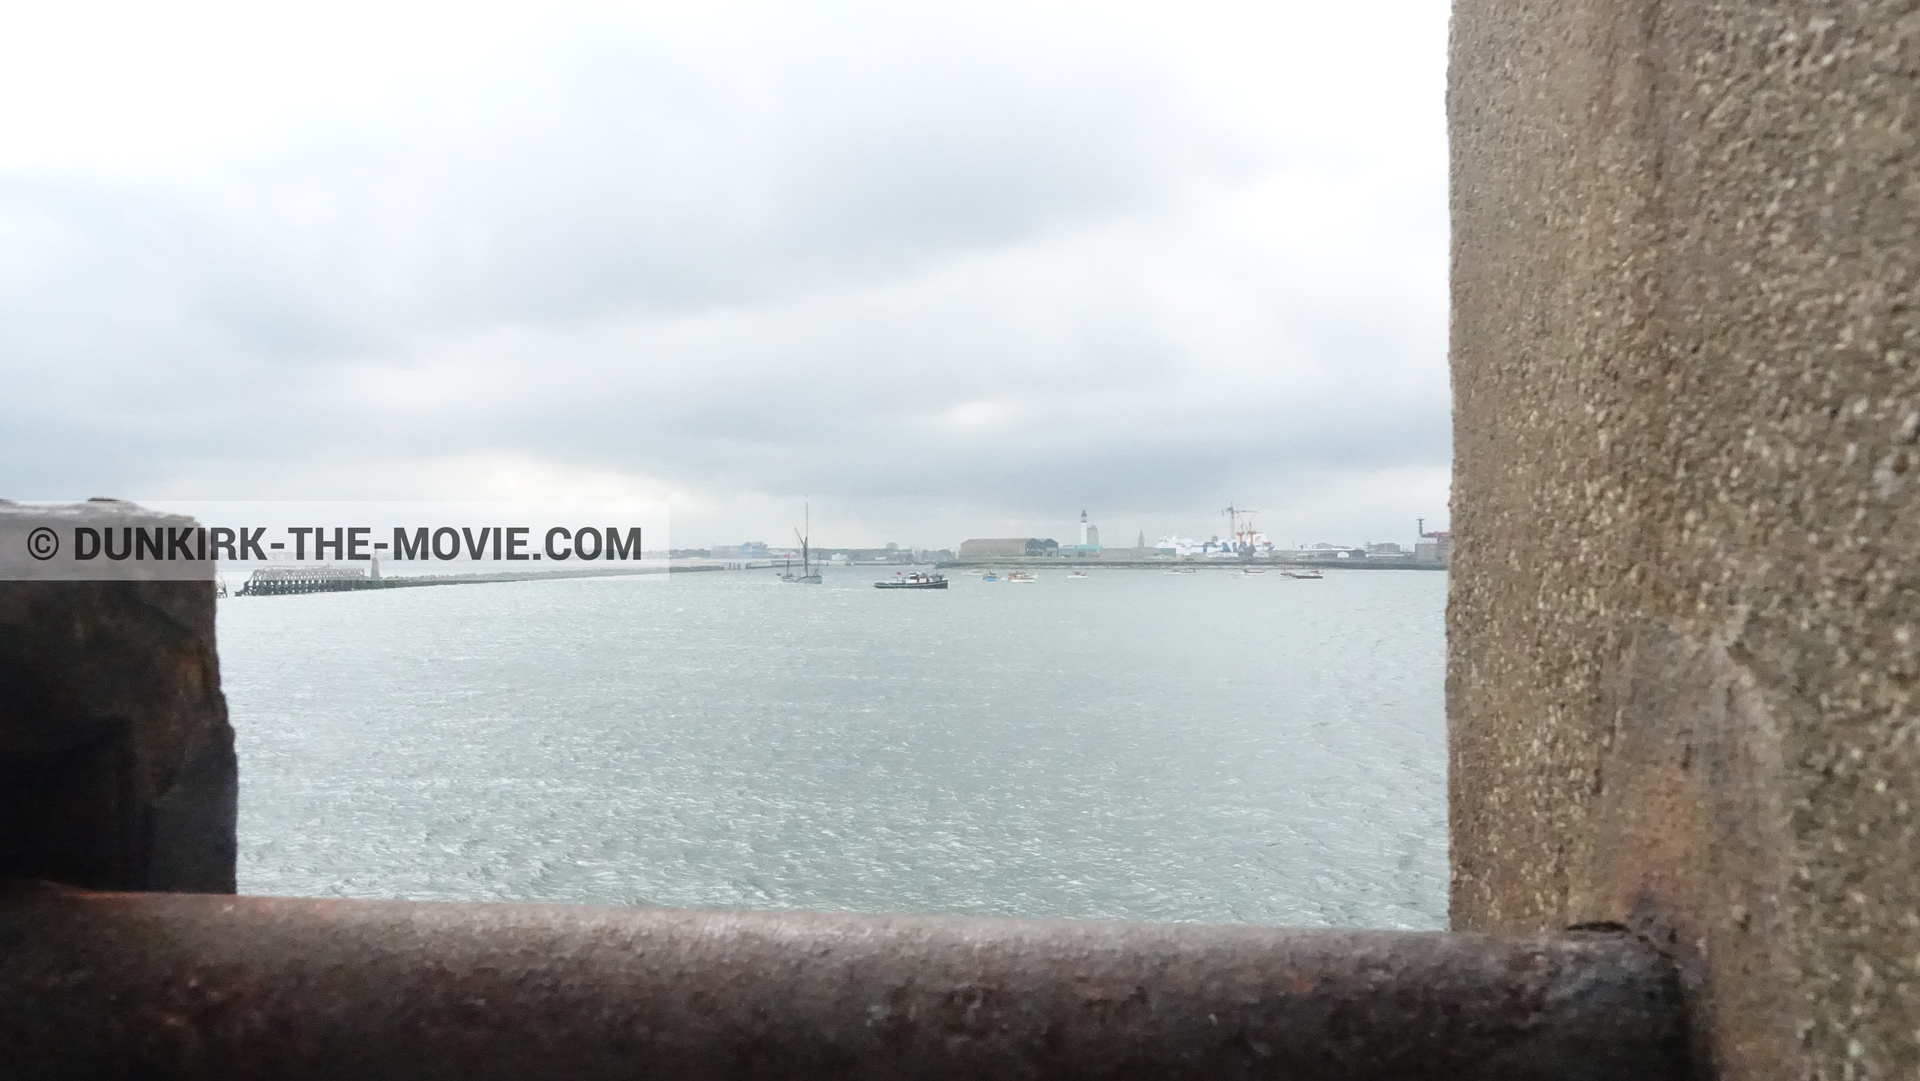 Fotos con muelle del ESTE,  durante el rodaje de la película Dunkerque de Nolan